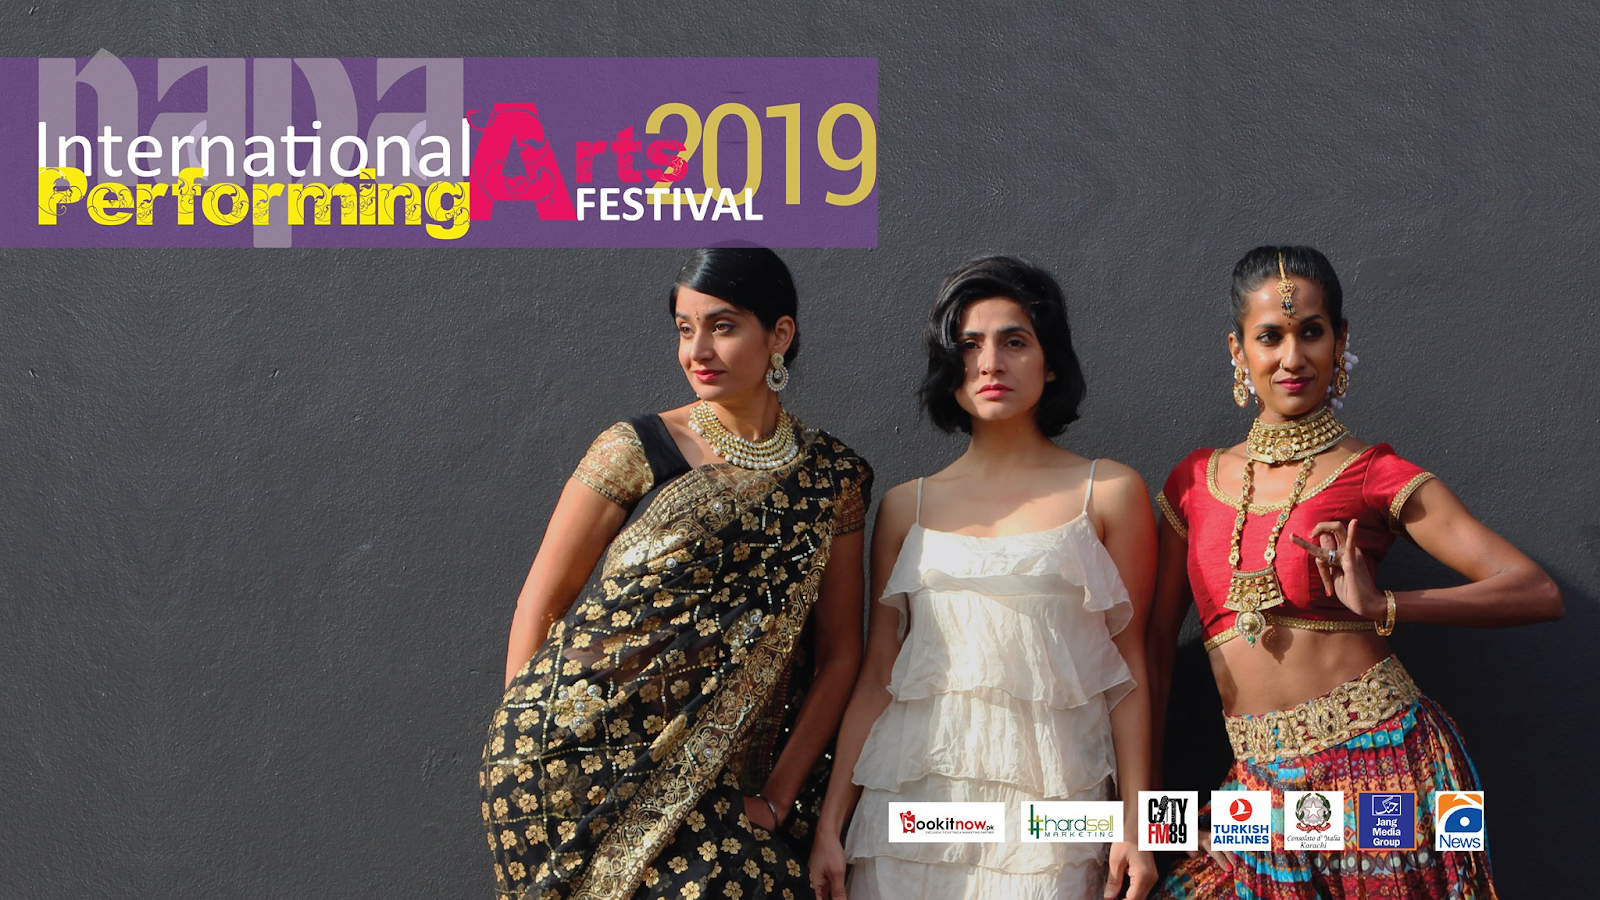 International Performing Arts Festival 2019